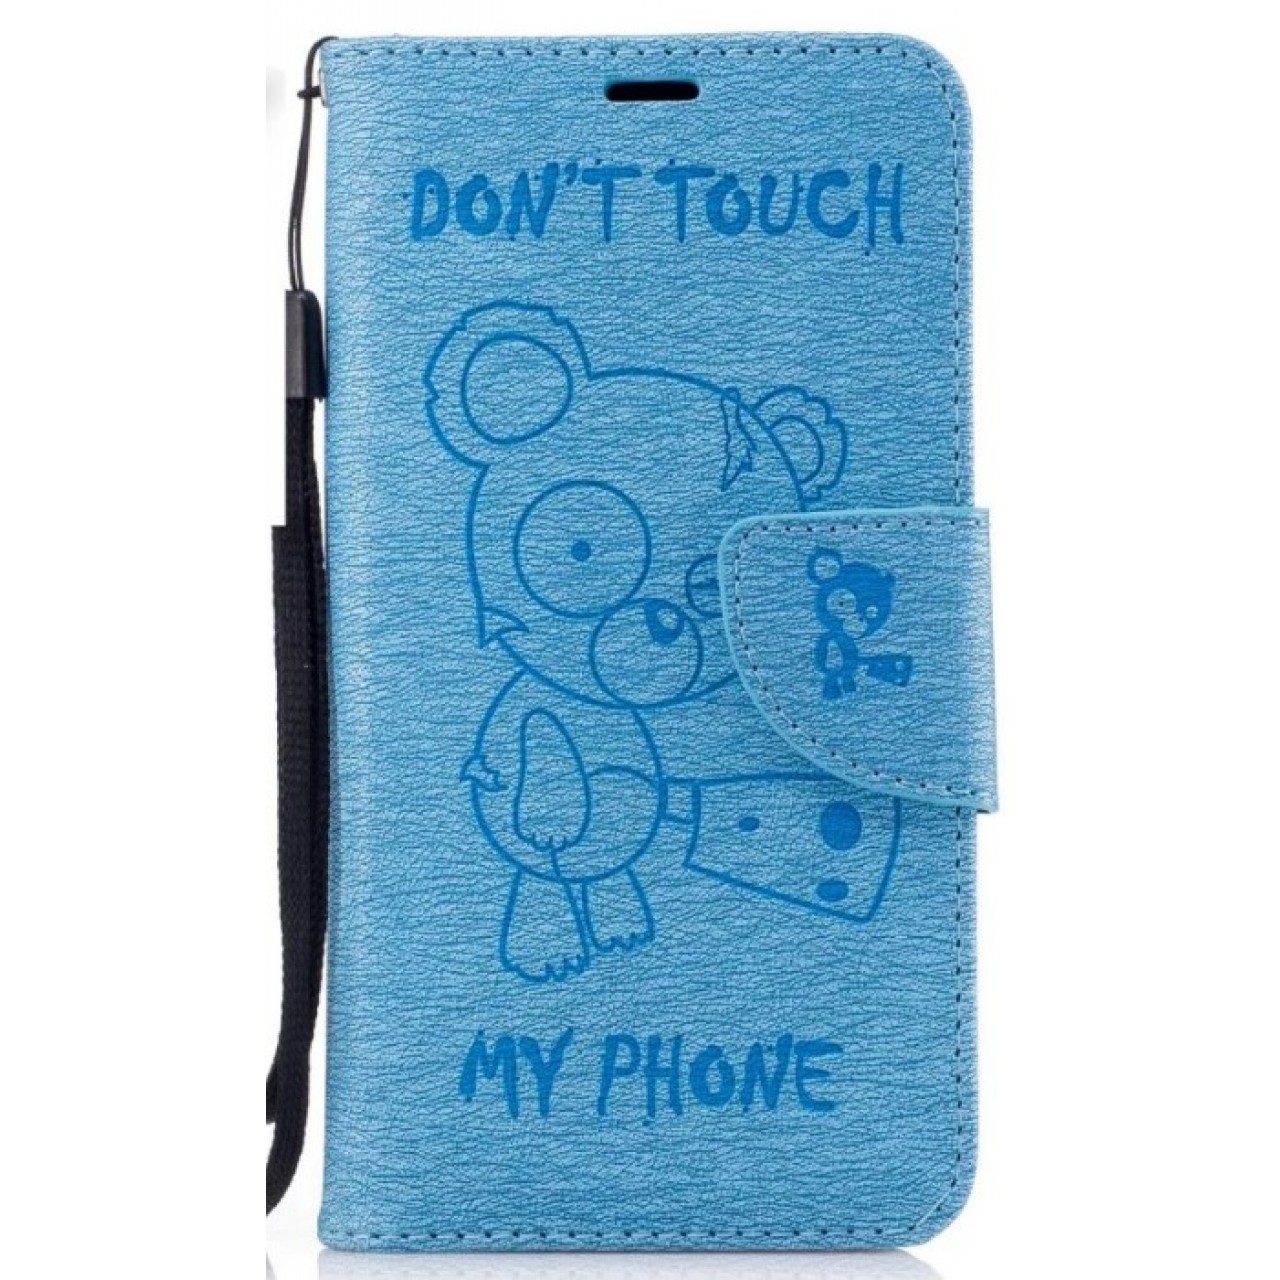 Θήκη Samsung Galaxy J3 Emerge / J3 Prime PU Leather Πορτοφόλι flip Don t touch my phone - 2399 - Γαλάζιο - OEM